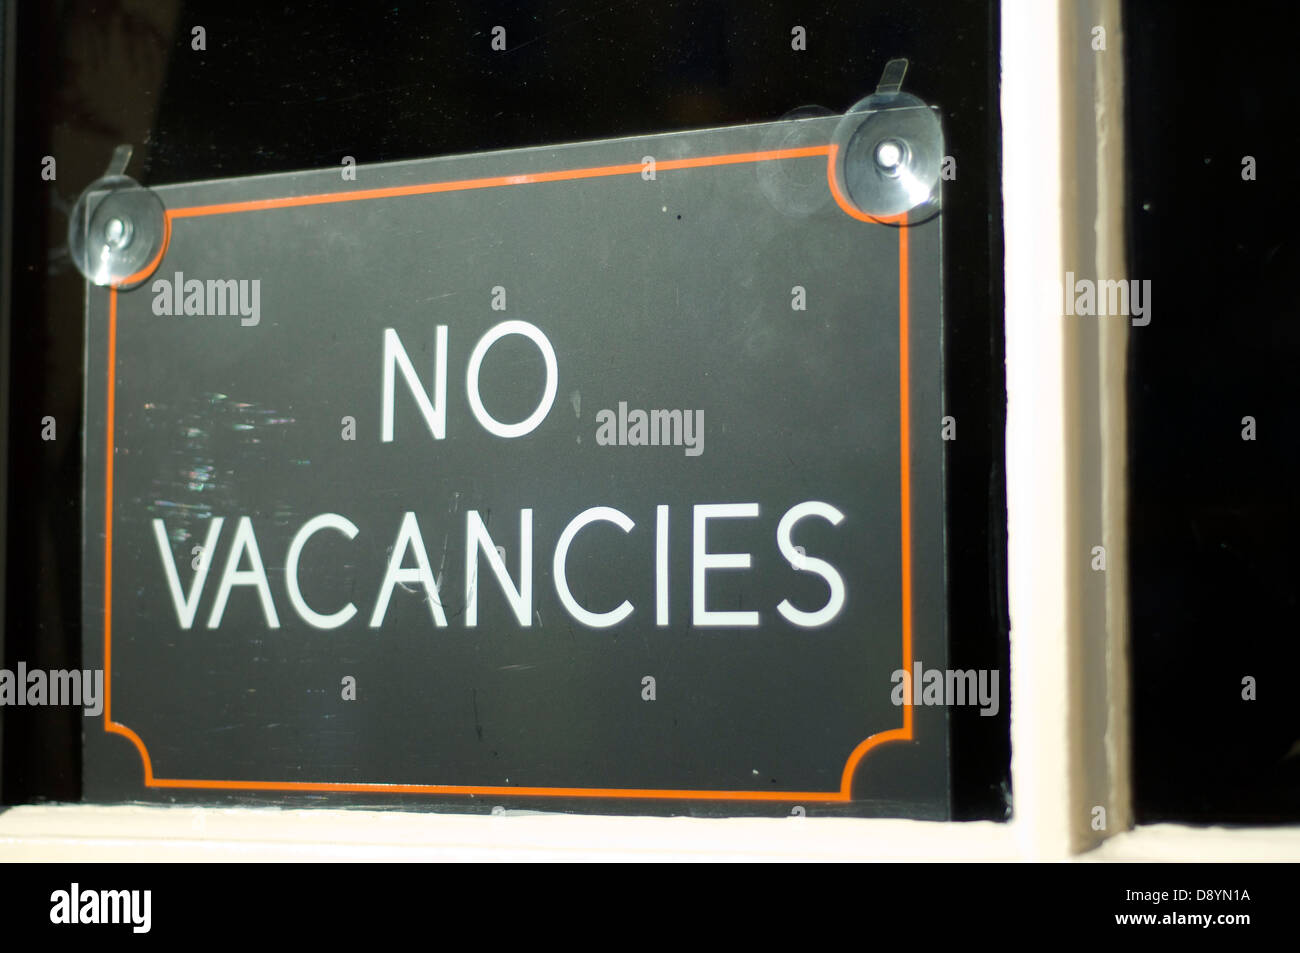 No vacancies sign Stock Photo